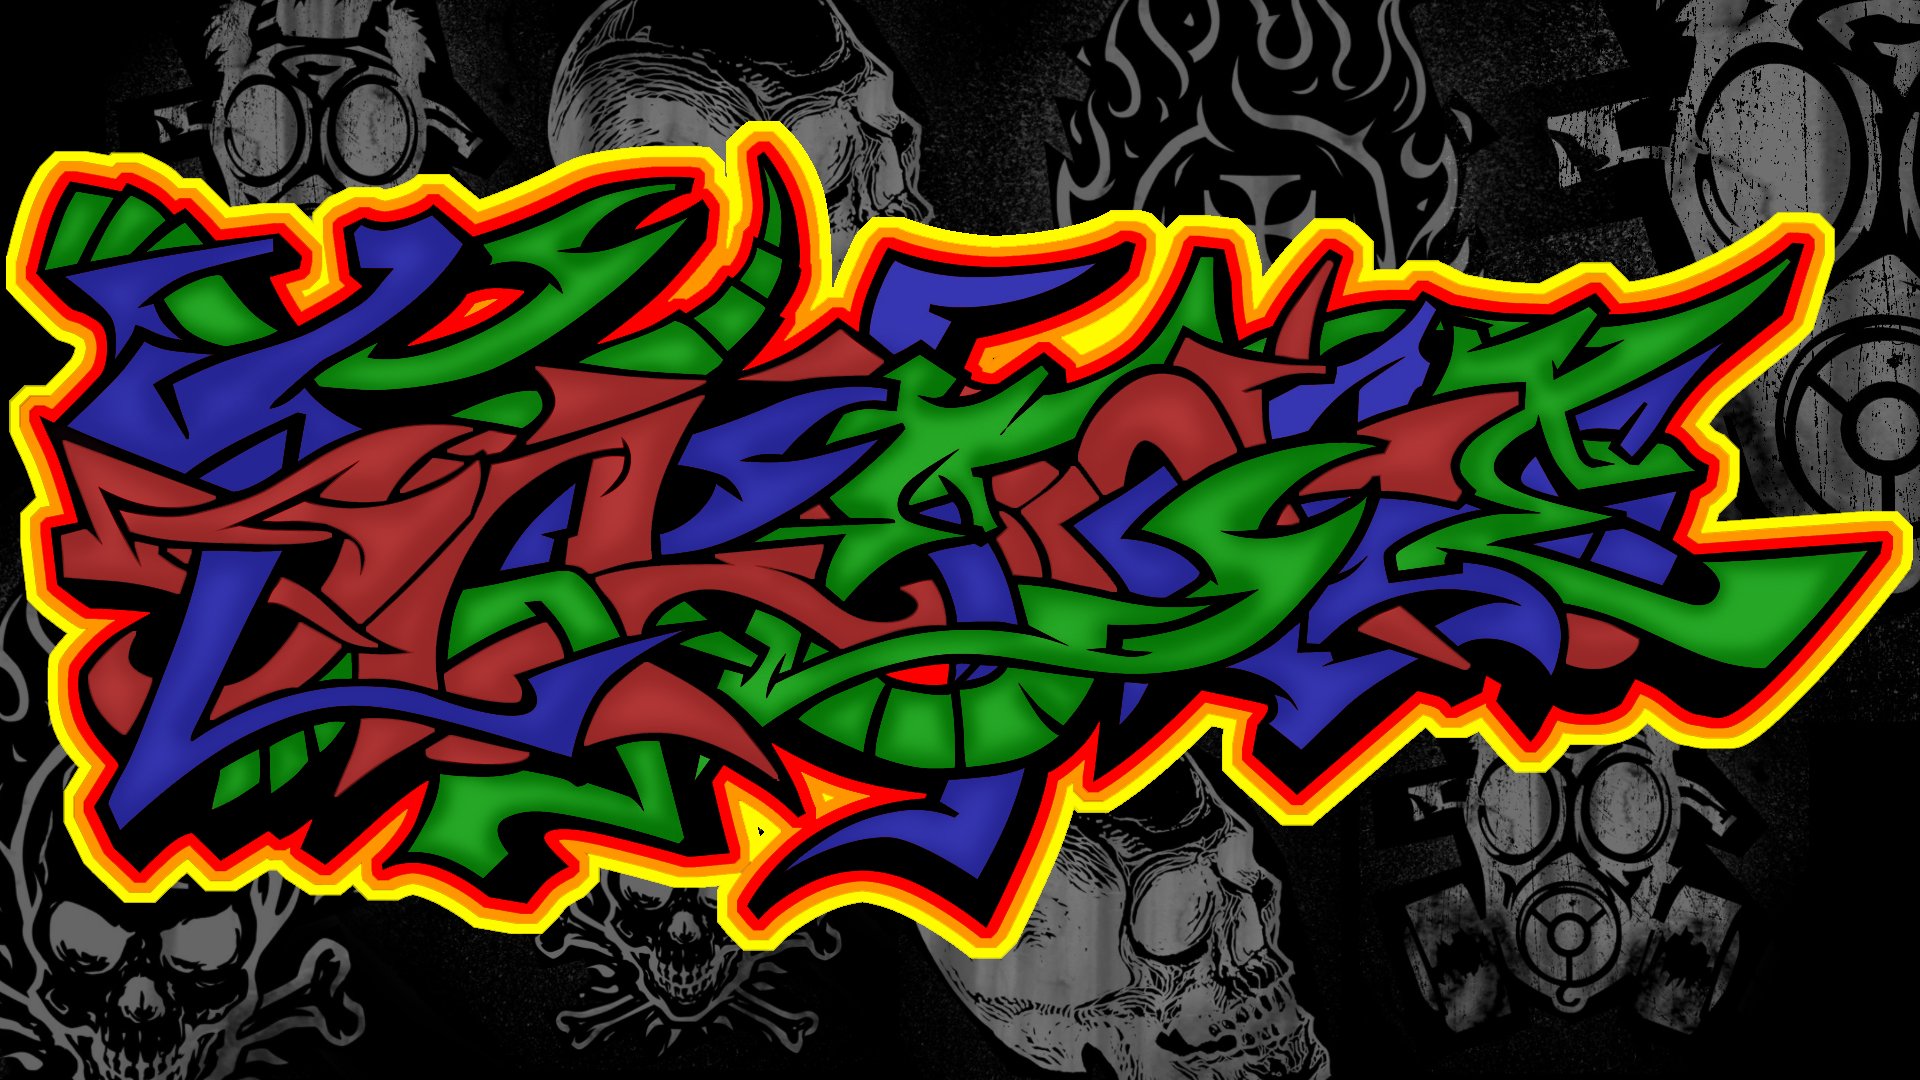 Graffiti Wallpaper Image For Laptop Amp Desktops